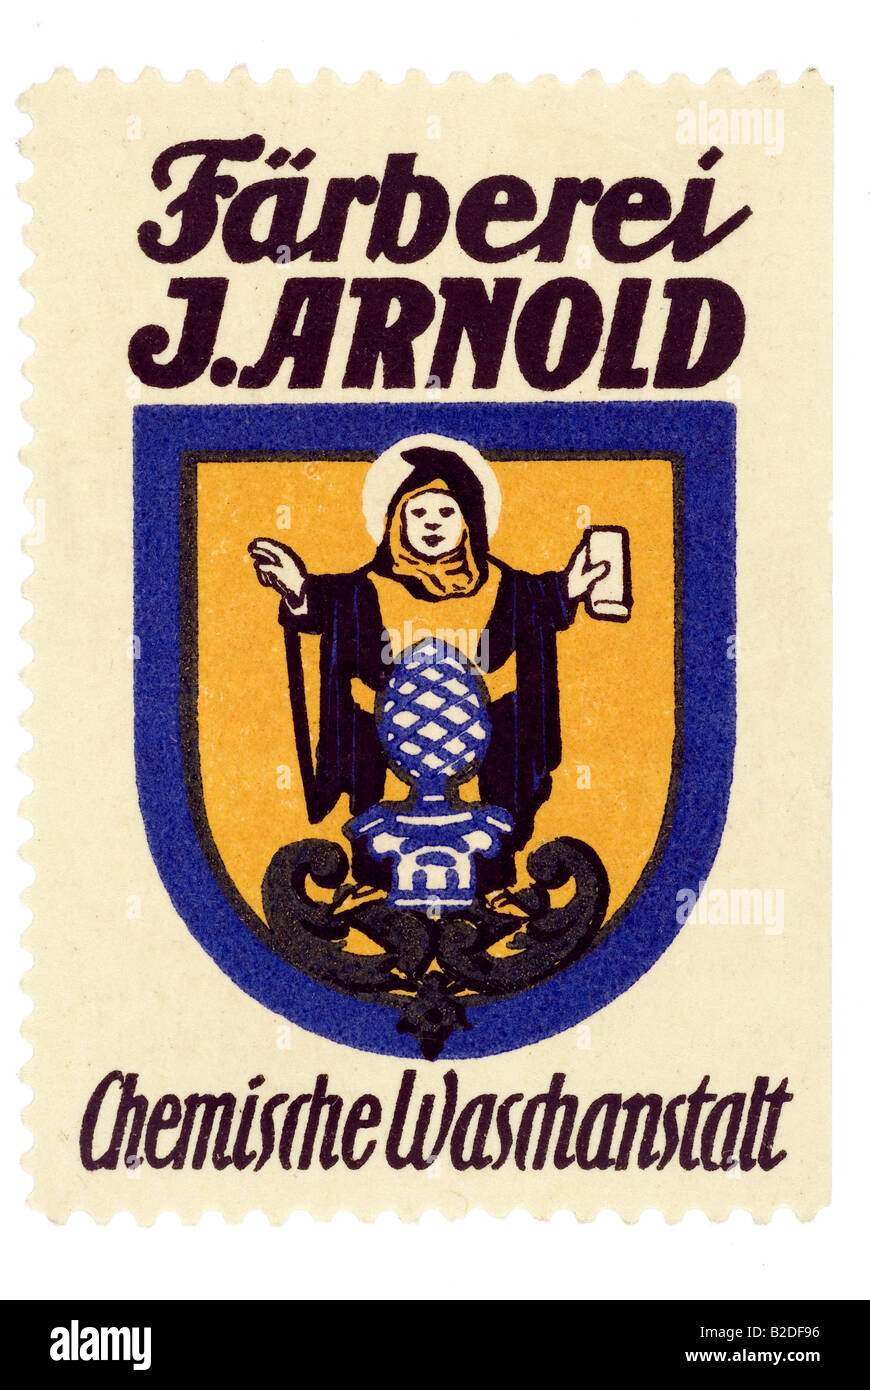 Trading-Stempel Färberei J Arnold Chemische Waschanstalt Stockfoto